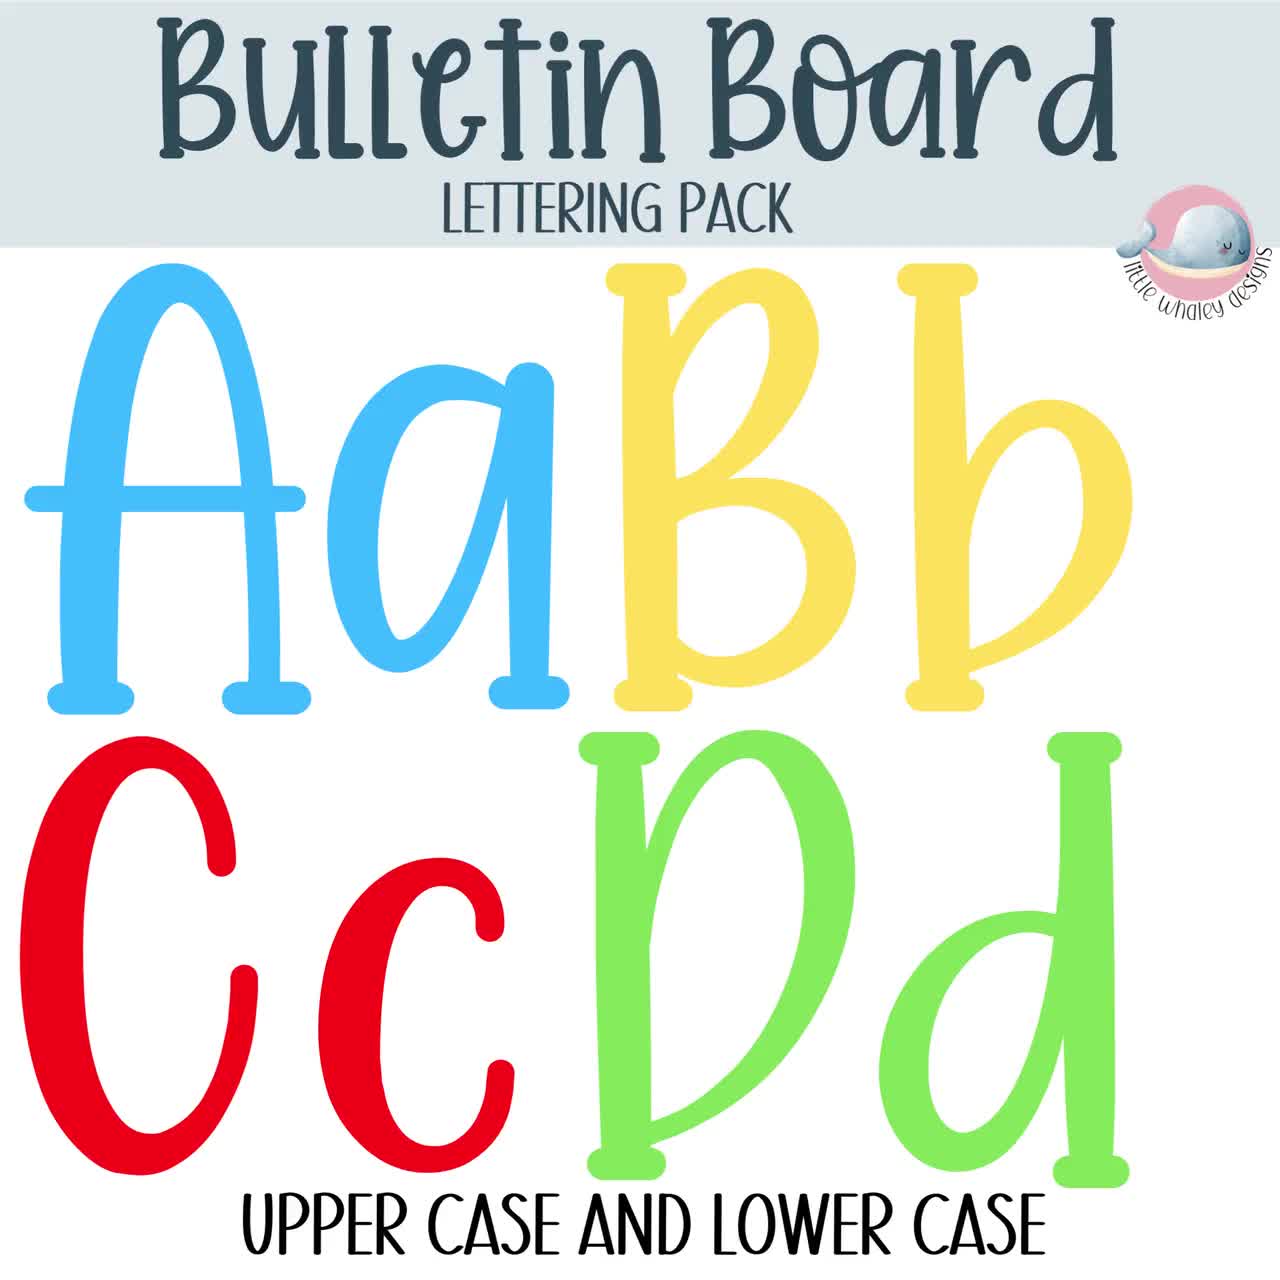 Printable Bulletin Board Lettering Pack, Classroom Display Headers